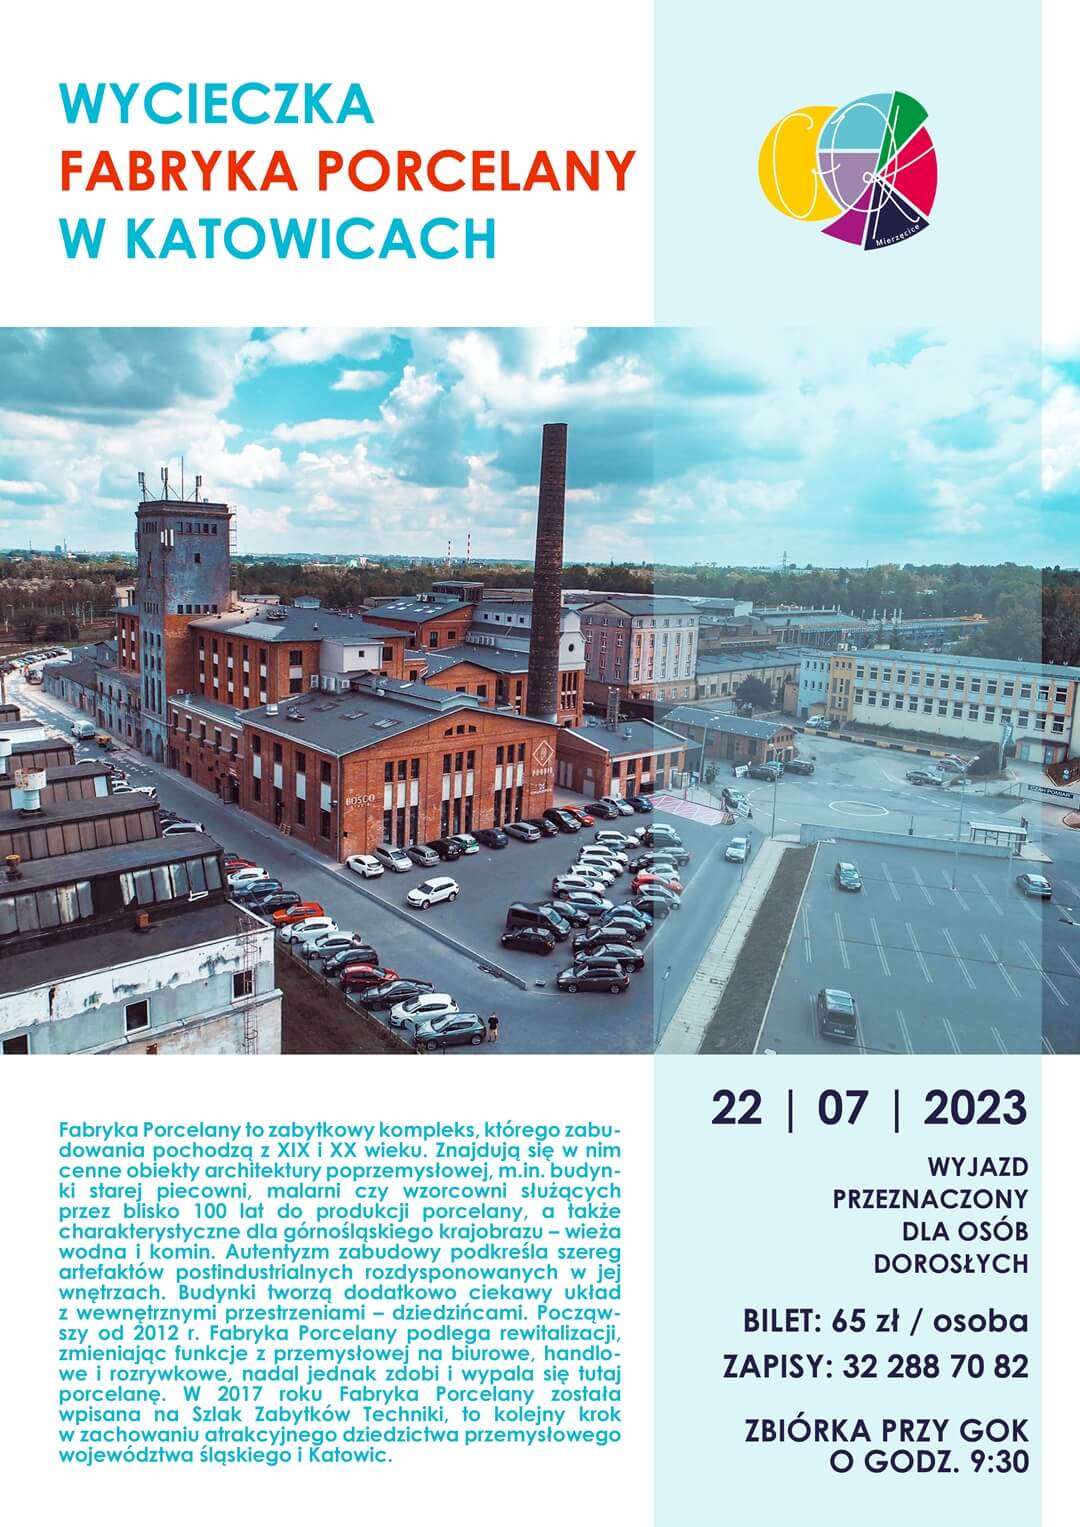 p1 GOK zaprasza dorosłych mieszkańców na wycieczkę do Fabryki Porcelany w Katowicach